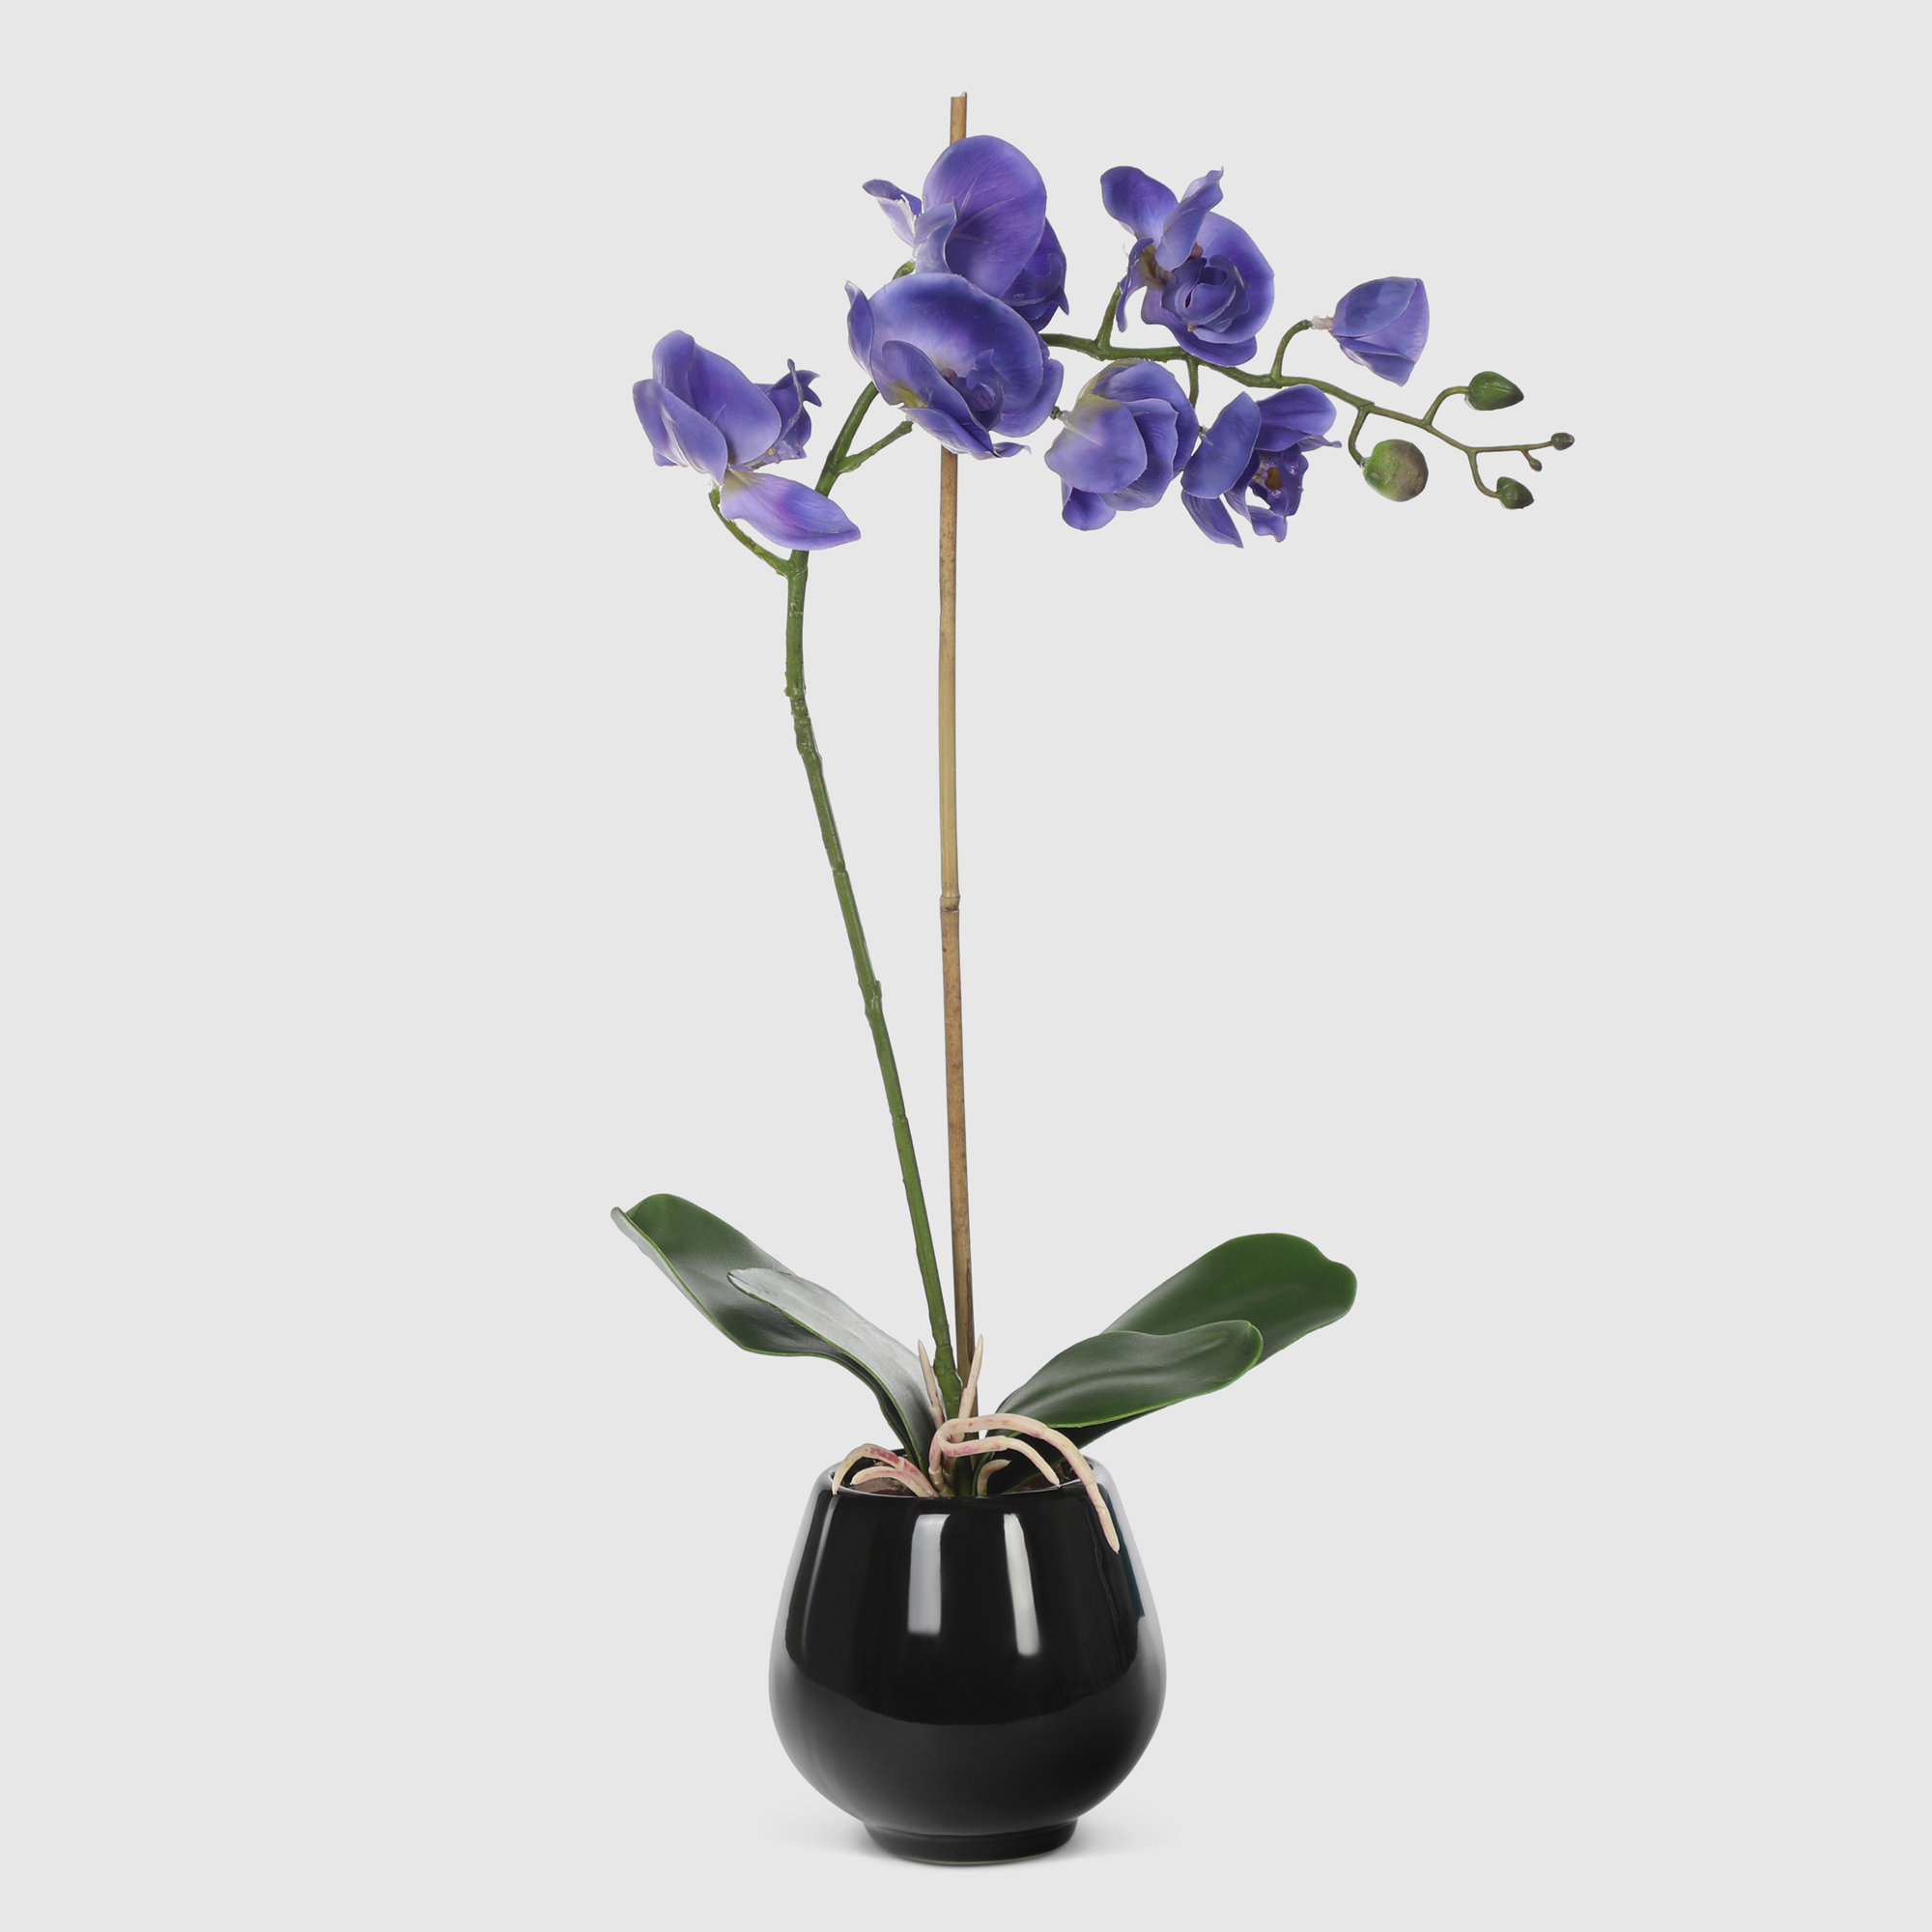 Орхидея в черном кашпо Конэко-О 567_10164185 50 см орхидея фаленопсис конэко о в кашпо 70 см